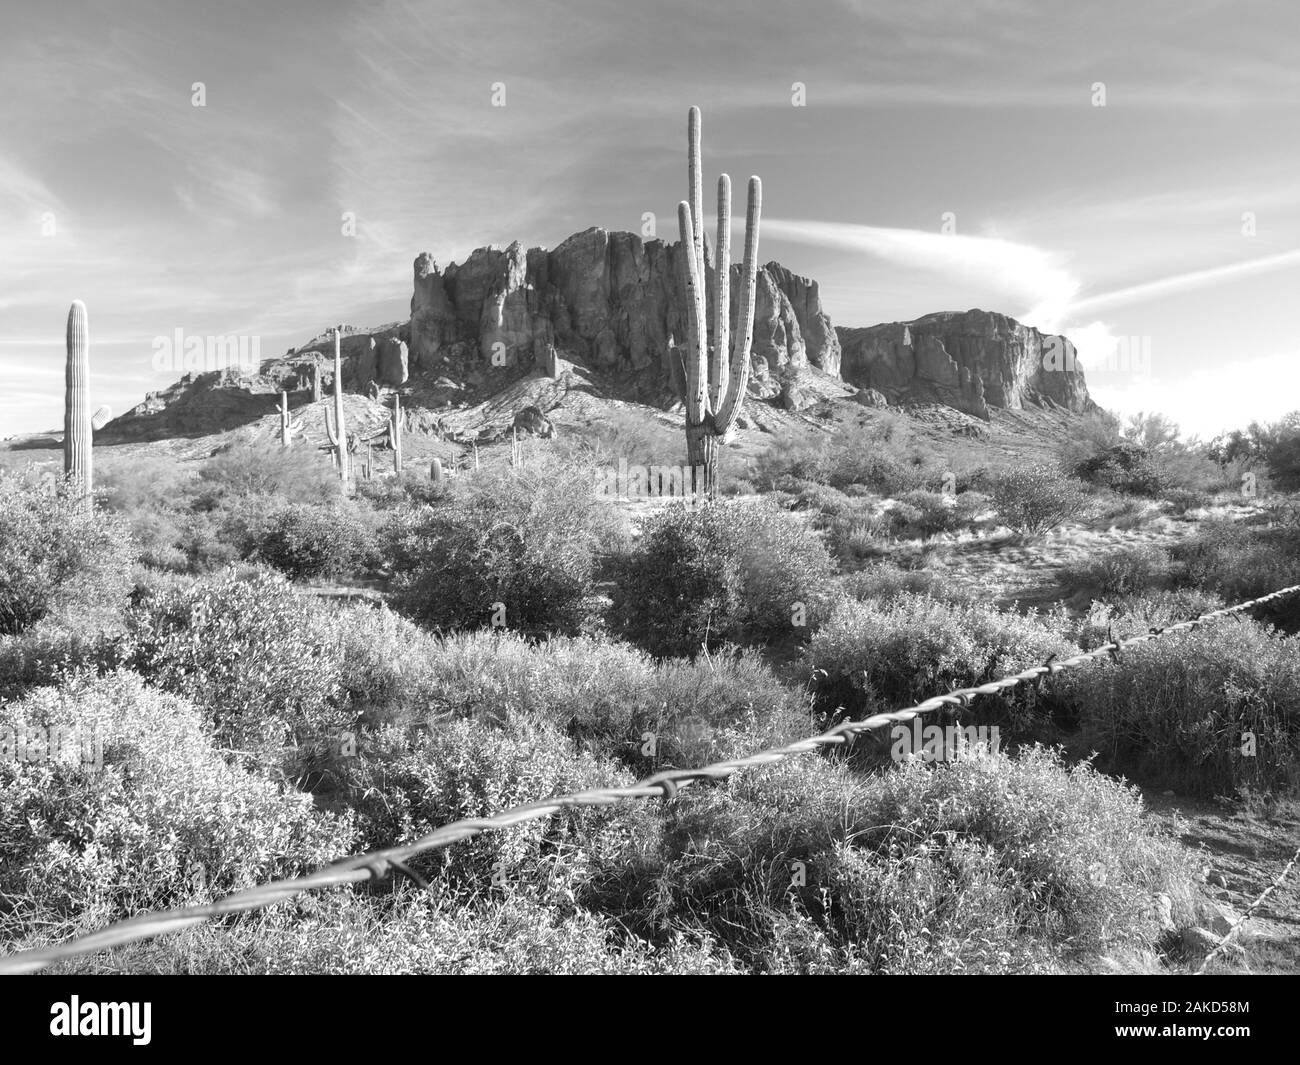 Aberglaube Mountain und Umgebung in Schwarzweiß östlich von Phoenix, Arizona. Stockfoto